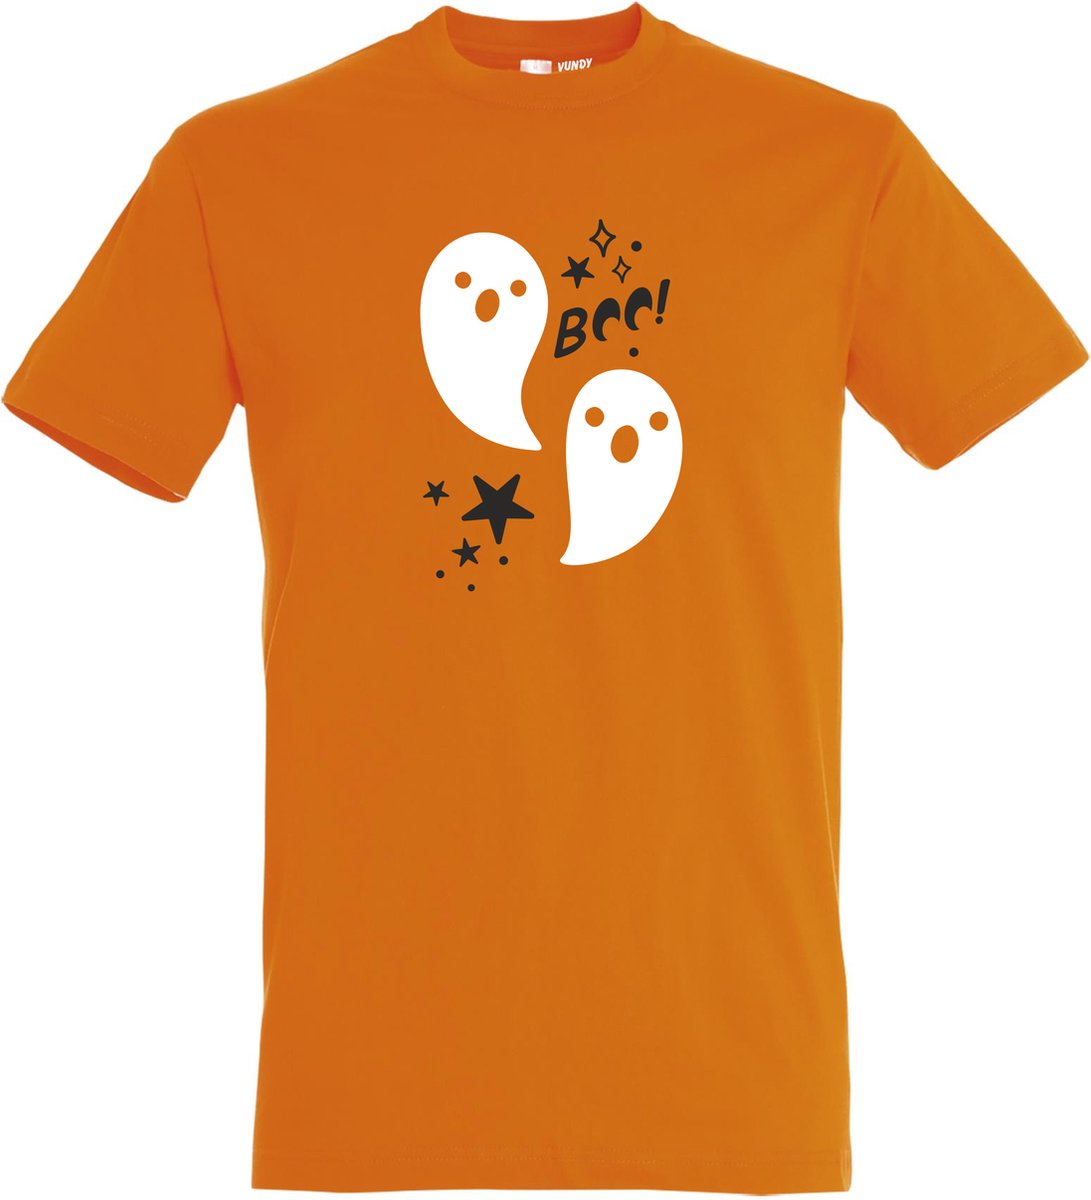 T-shirt kinderen Halloween Boo Spookjes | Halloween kostuum kind dames heren | verkleedkleren meisje jongen | Oranje | maat 128